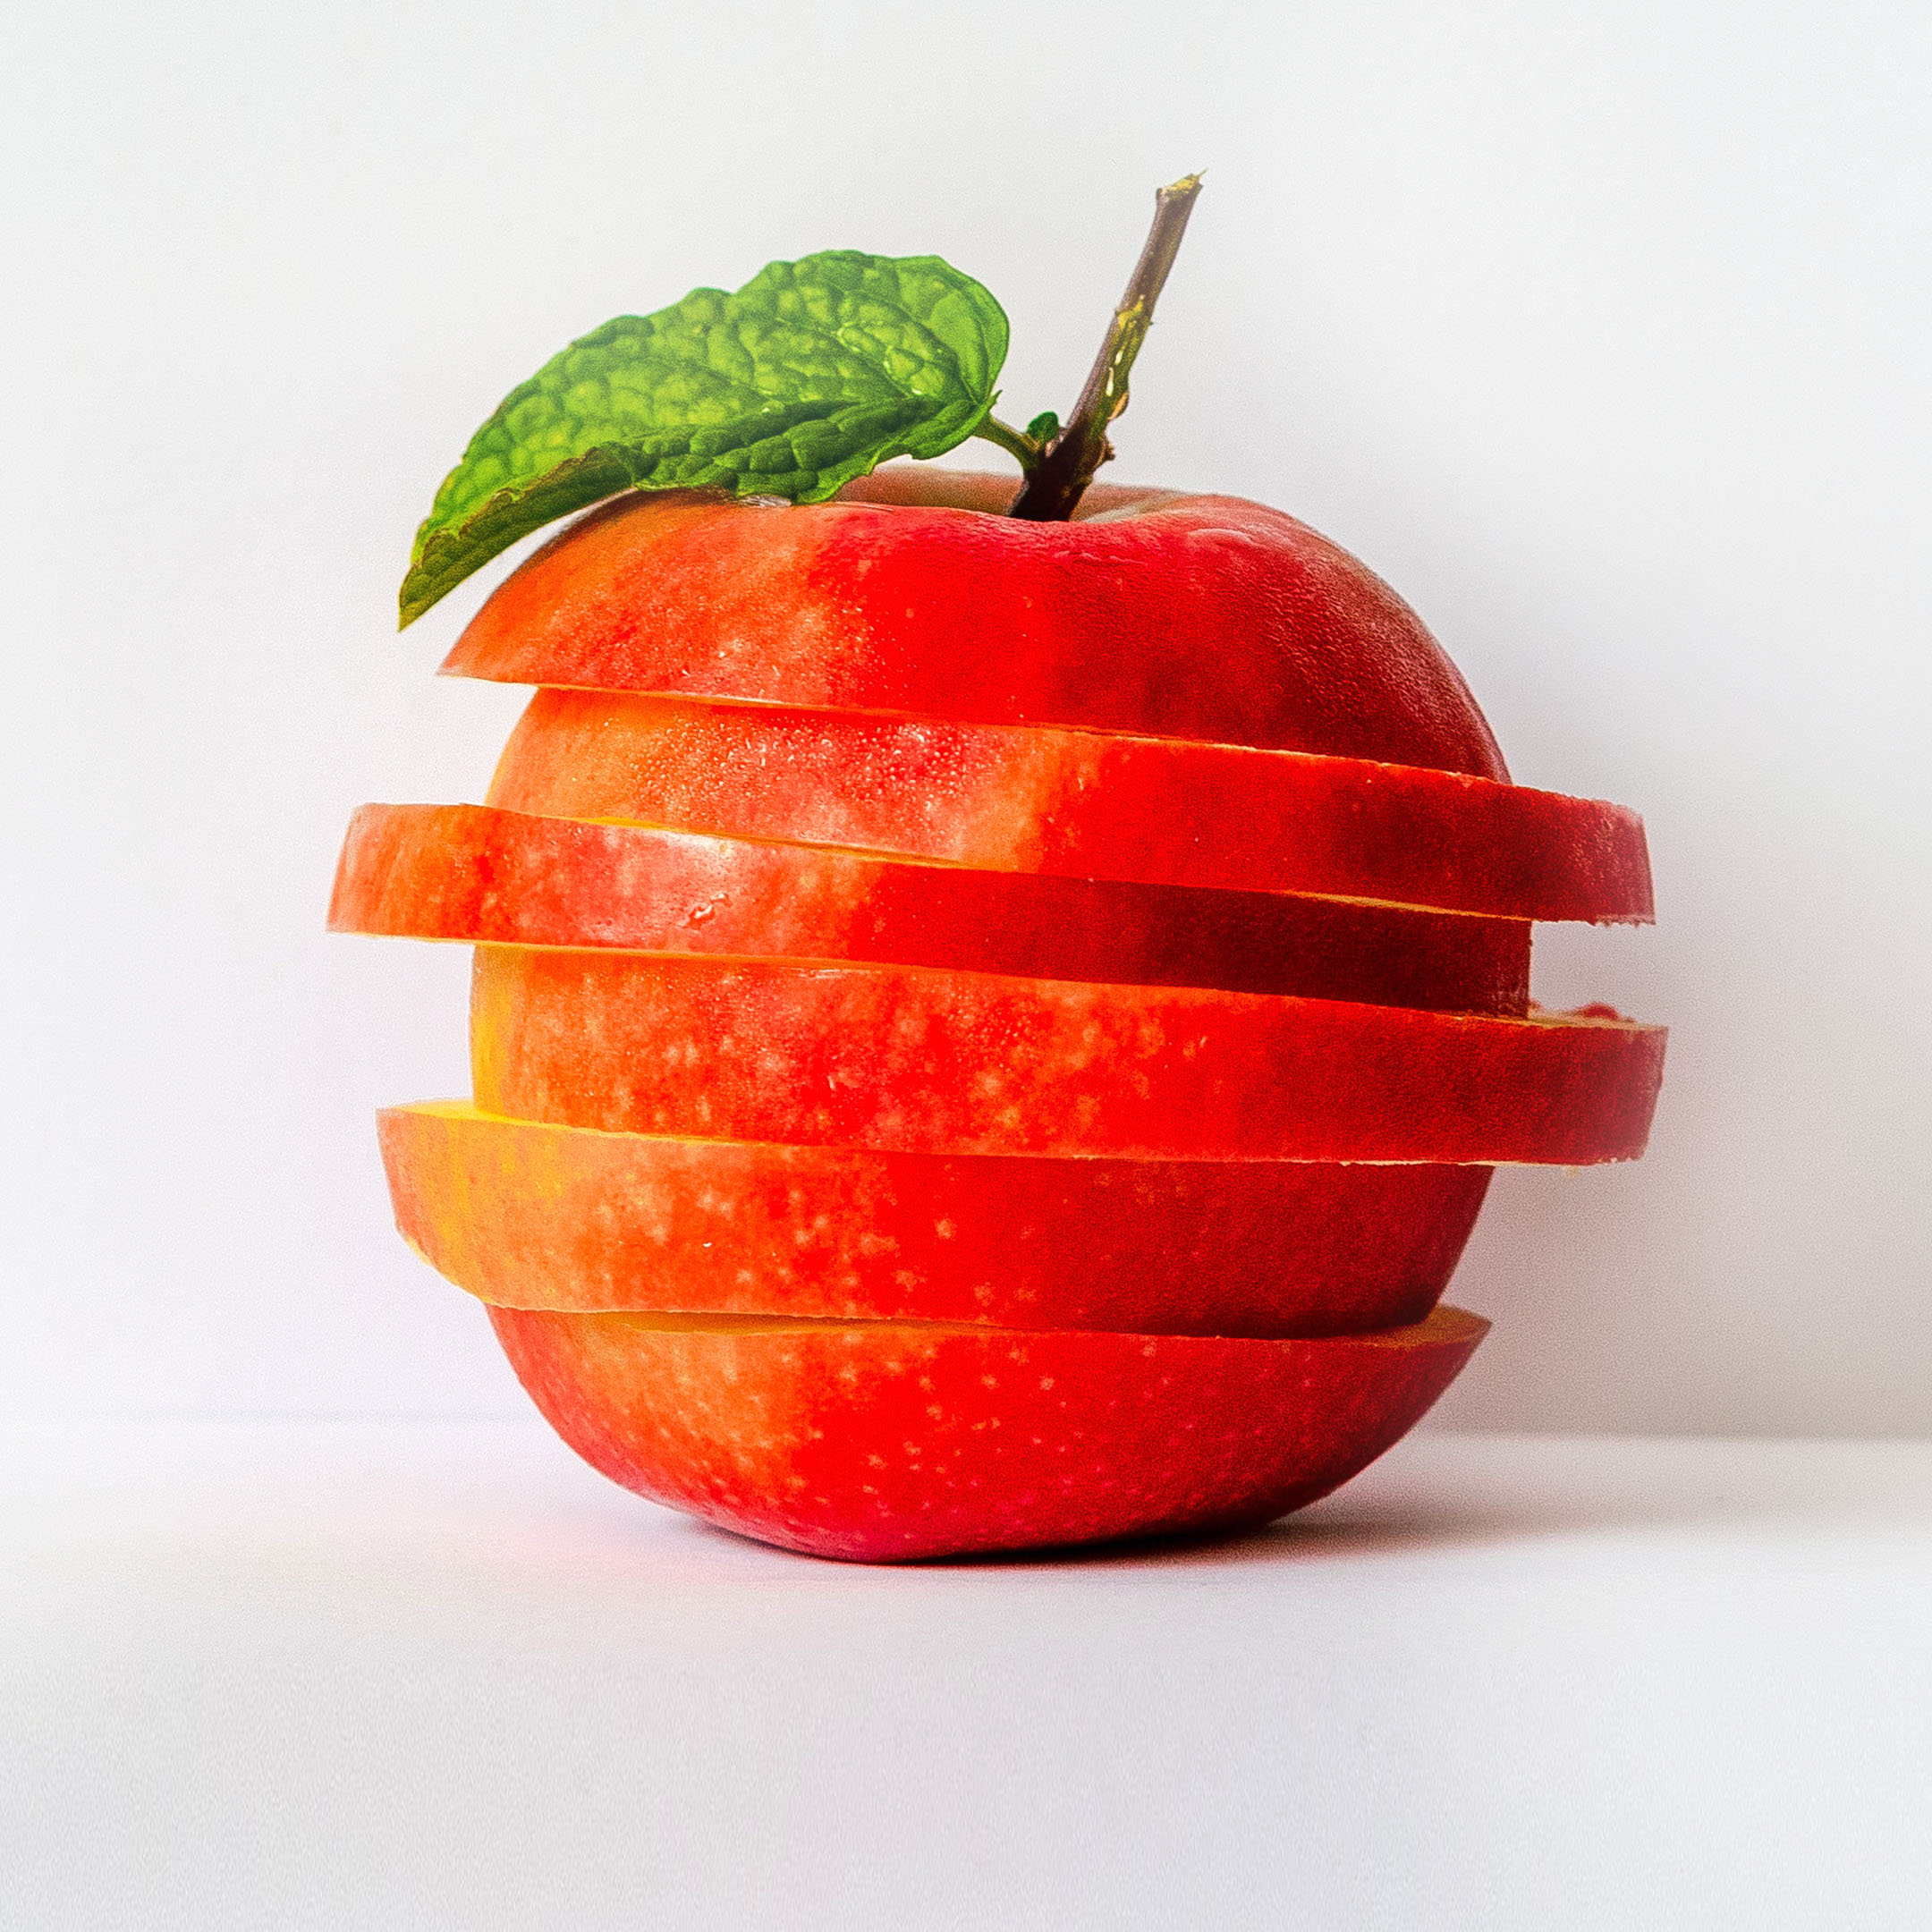 Ovocie zlepší zdravie, ale aj pomôže schudnúť